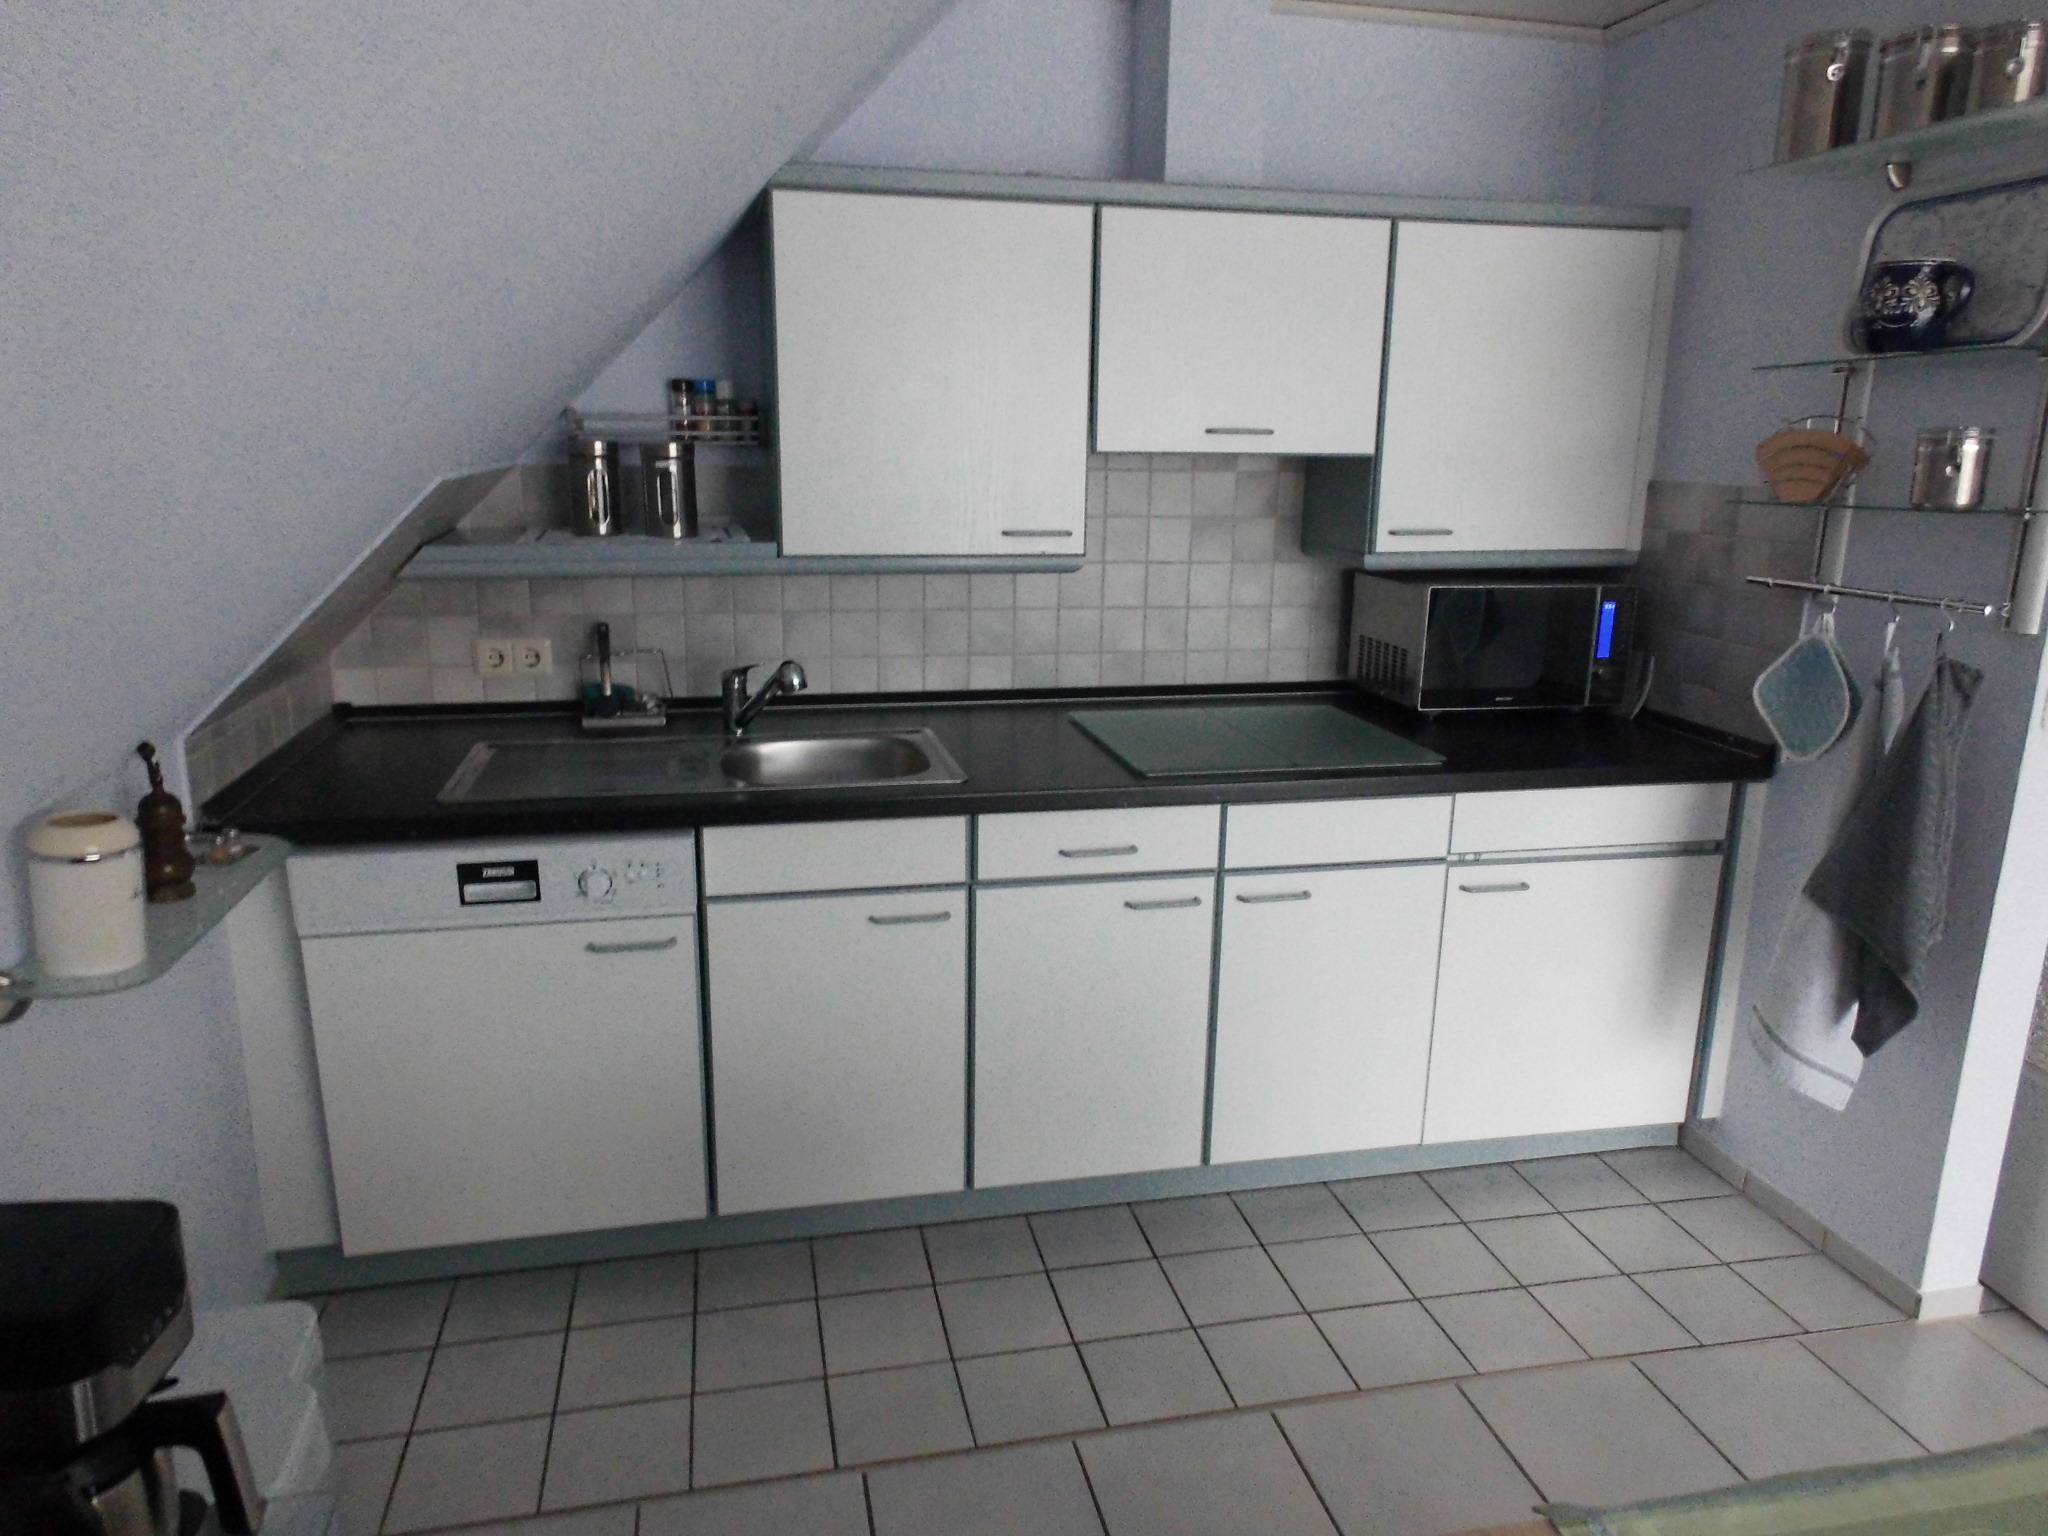  Küchenzeile mit Spülmaschine und Ceran-Kochfeld